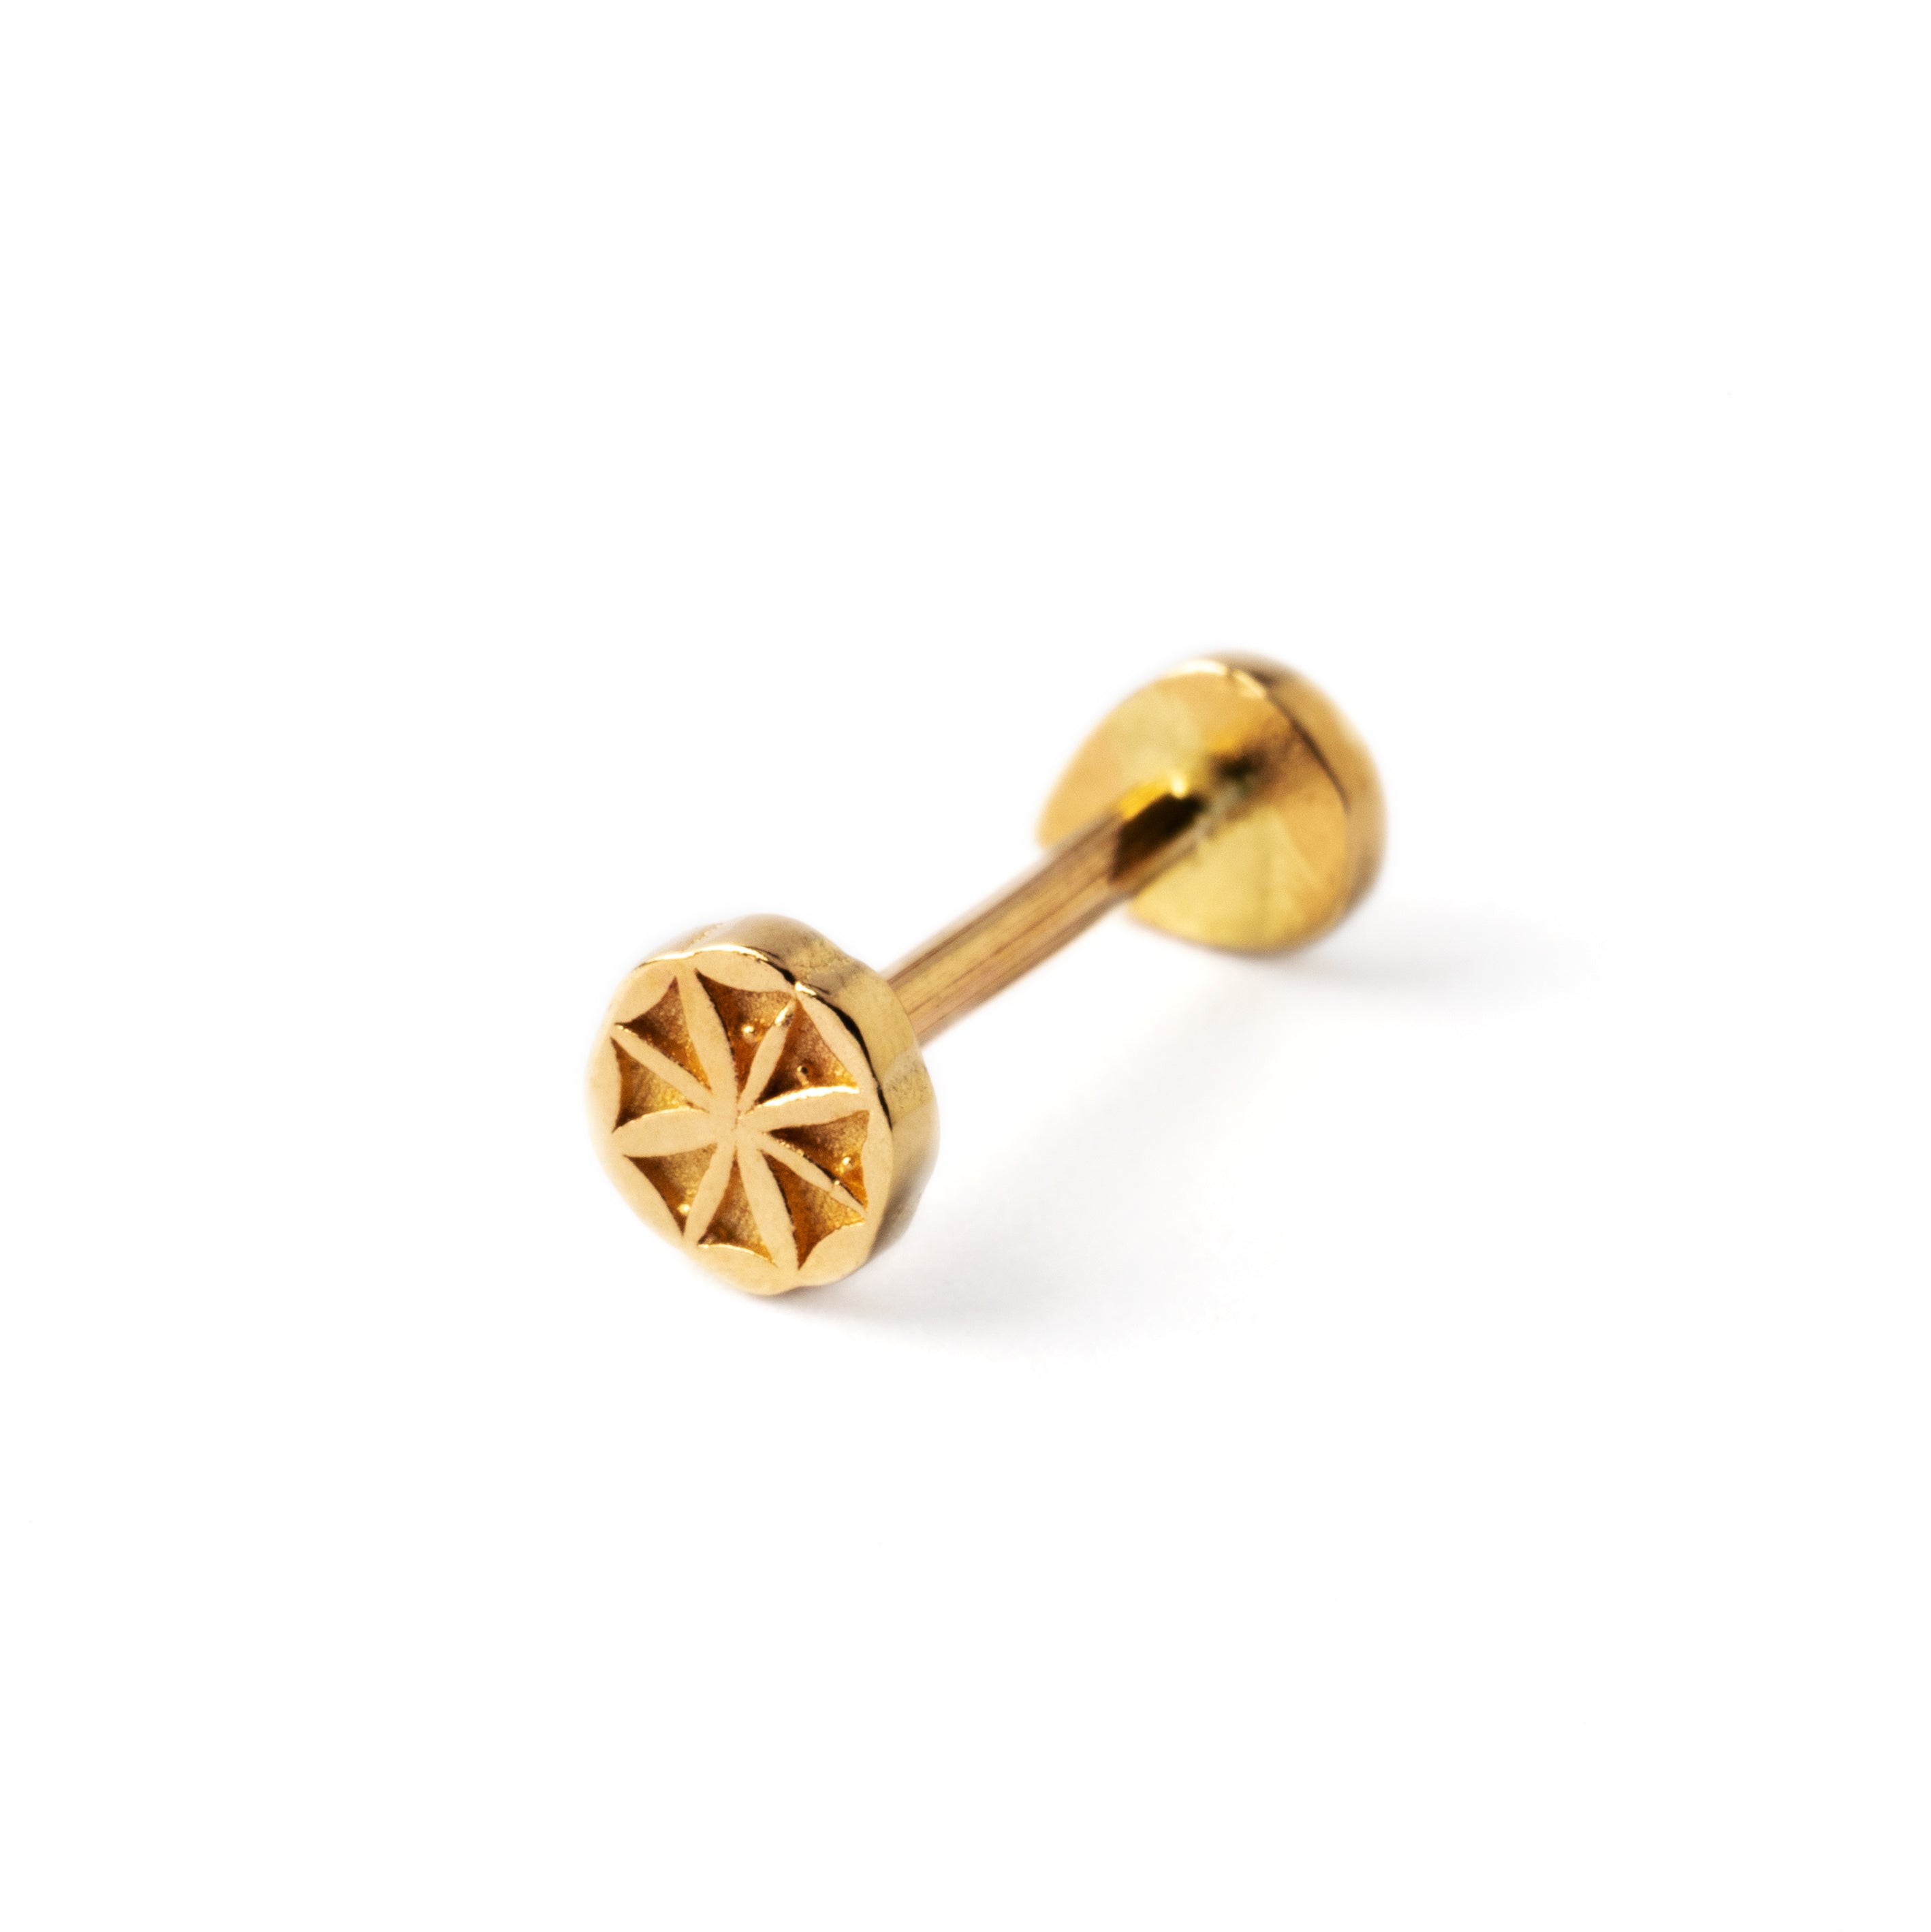 14k Gold internally threaded screw back earring 1.2mm (16g), 8mm, teardrop labret stud back side view